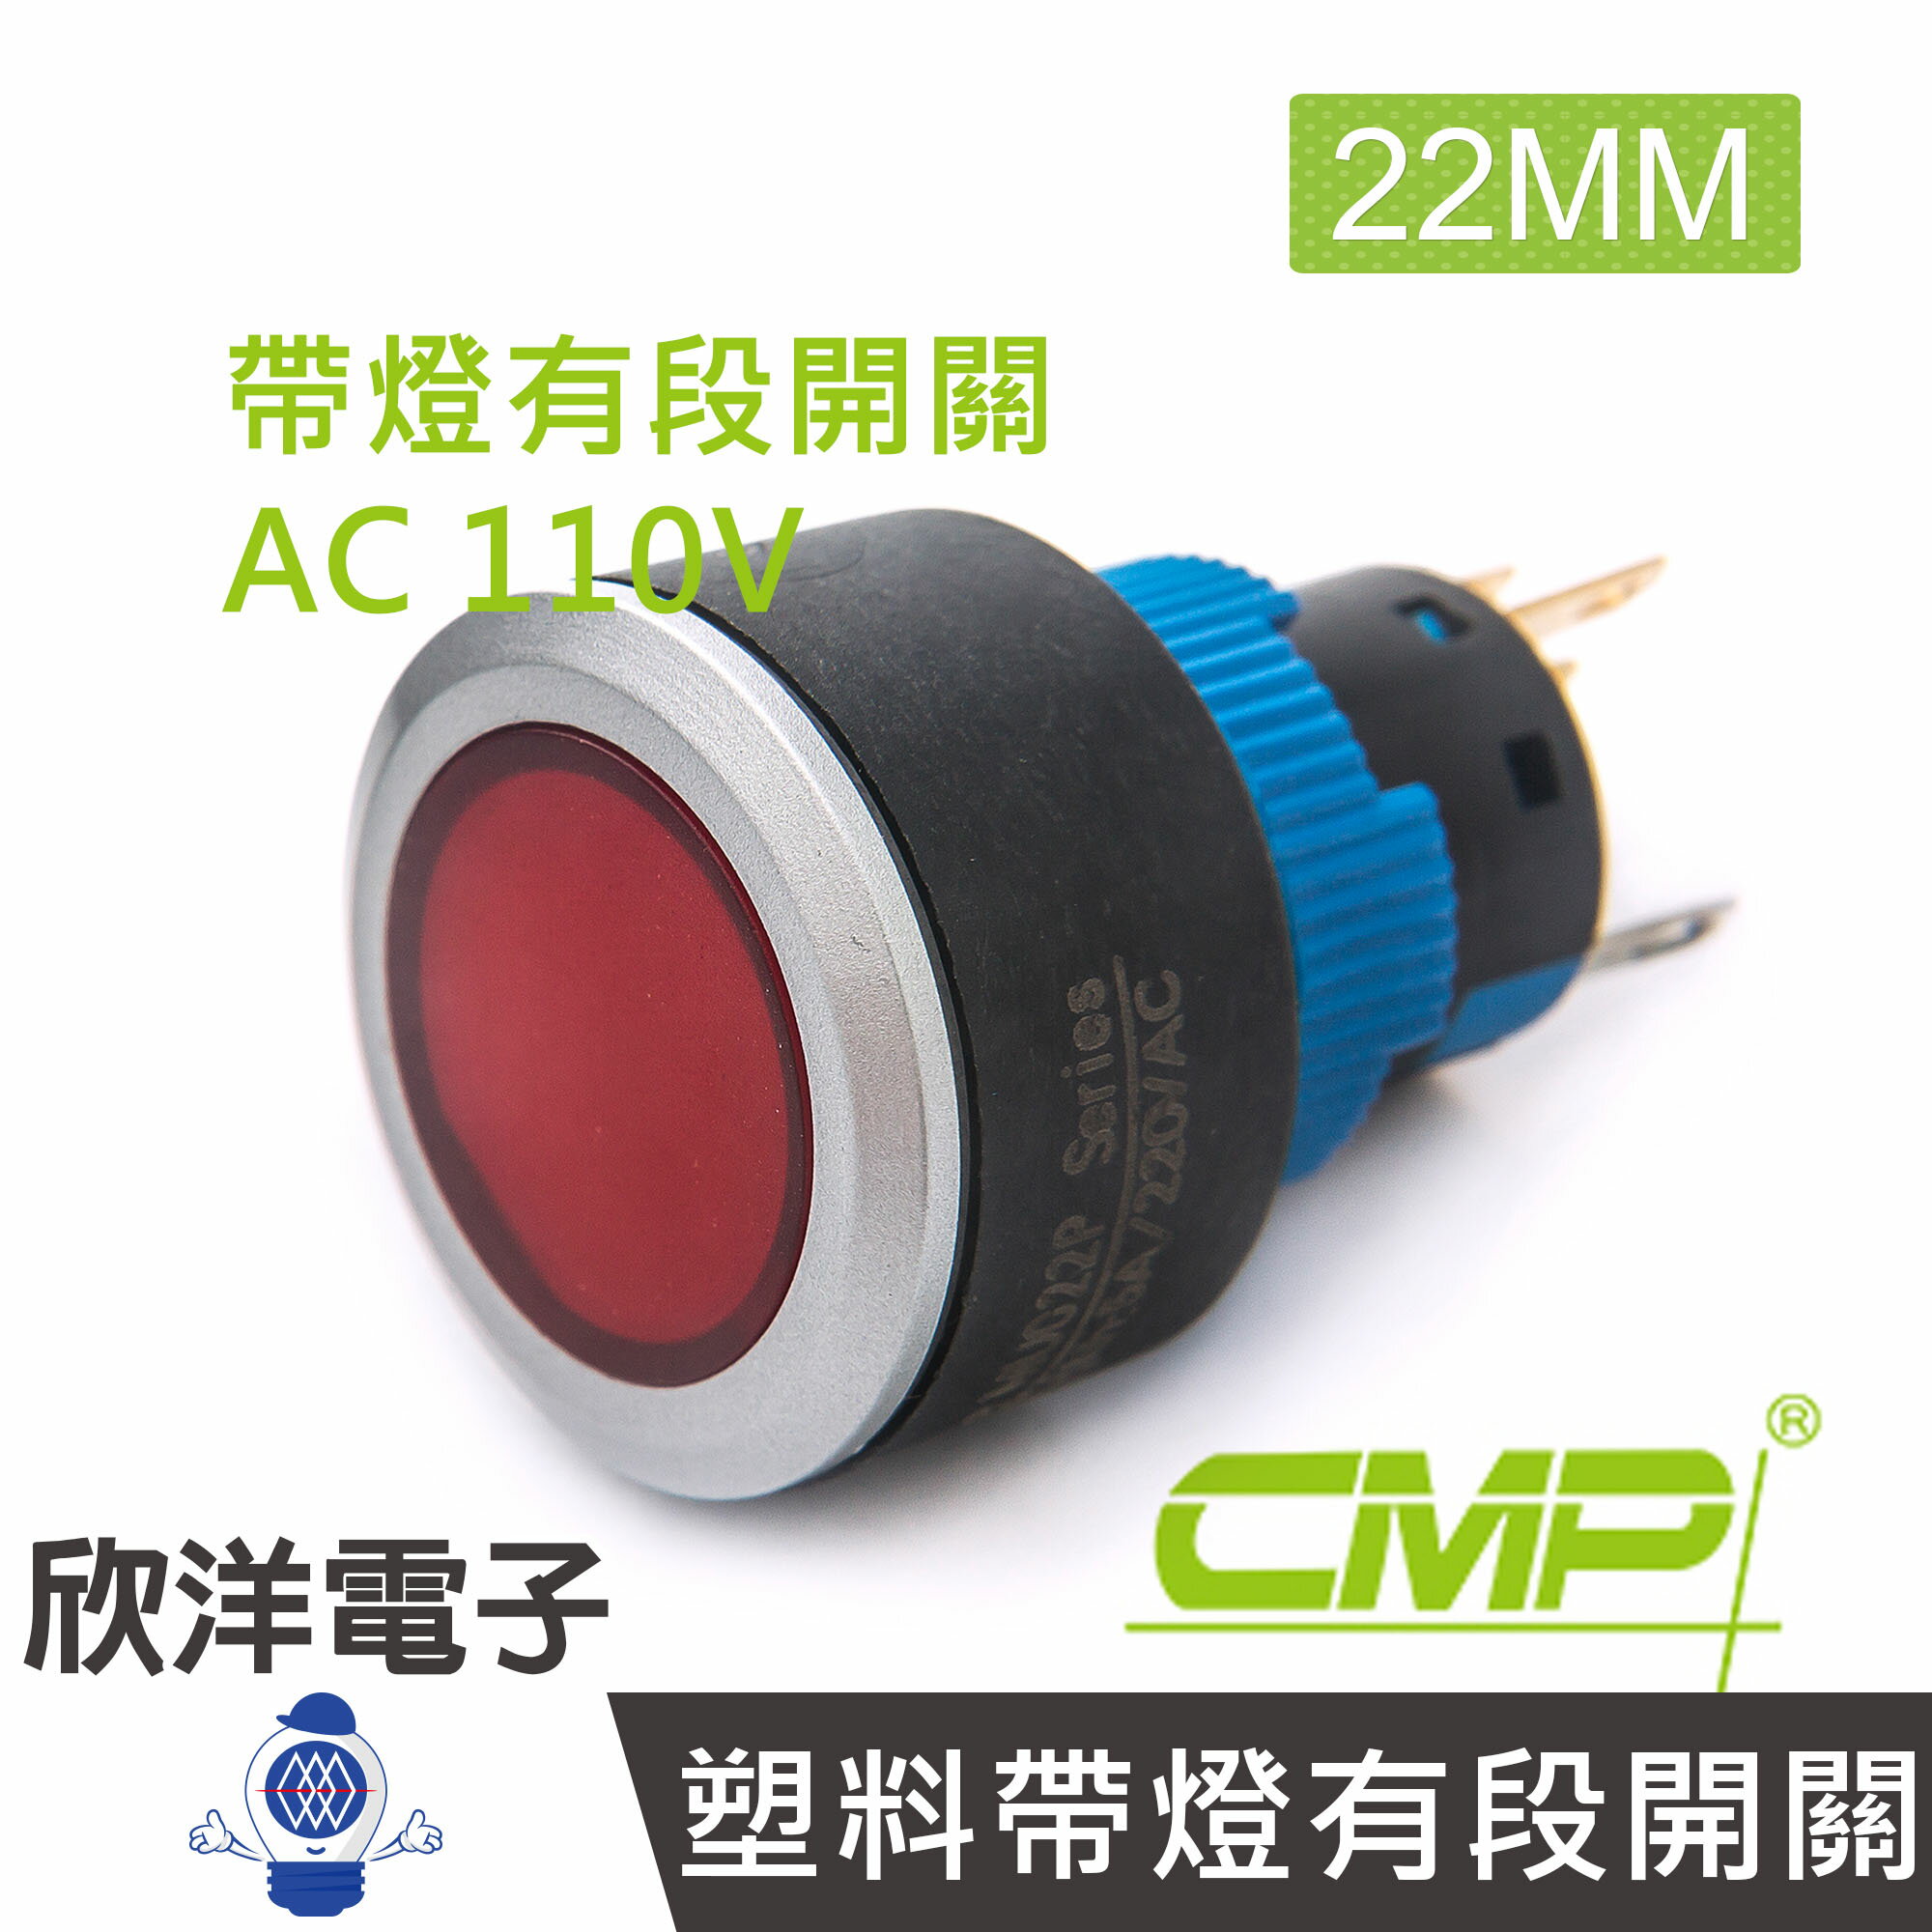 ※ 欣洋電子 ※ 22mm仿金屬塑料帶燈有段開關AC110V / P2202B-110V 藍、綠、紅、白、橙 五色光自由選購/ CMP西普